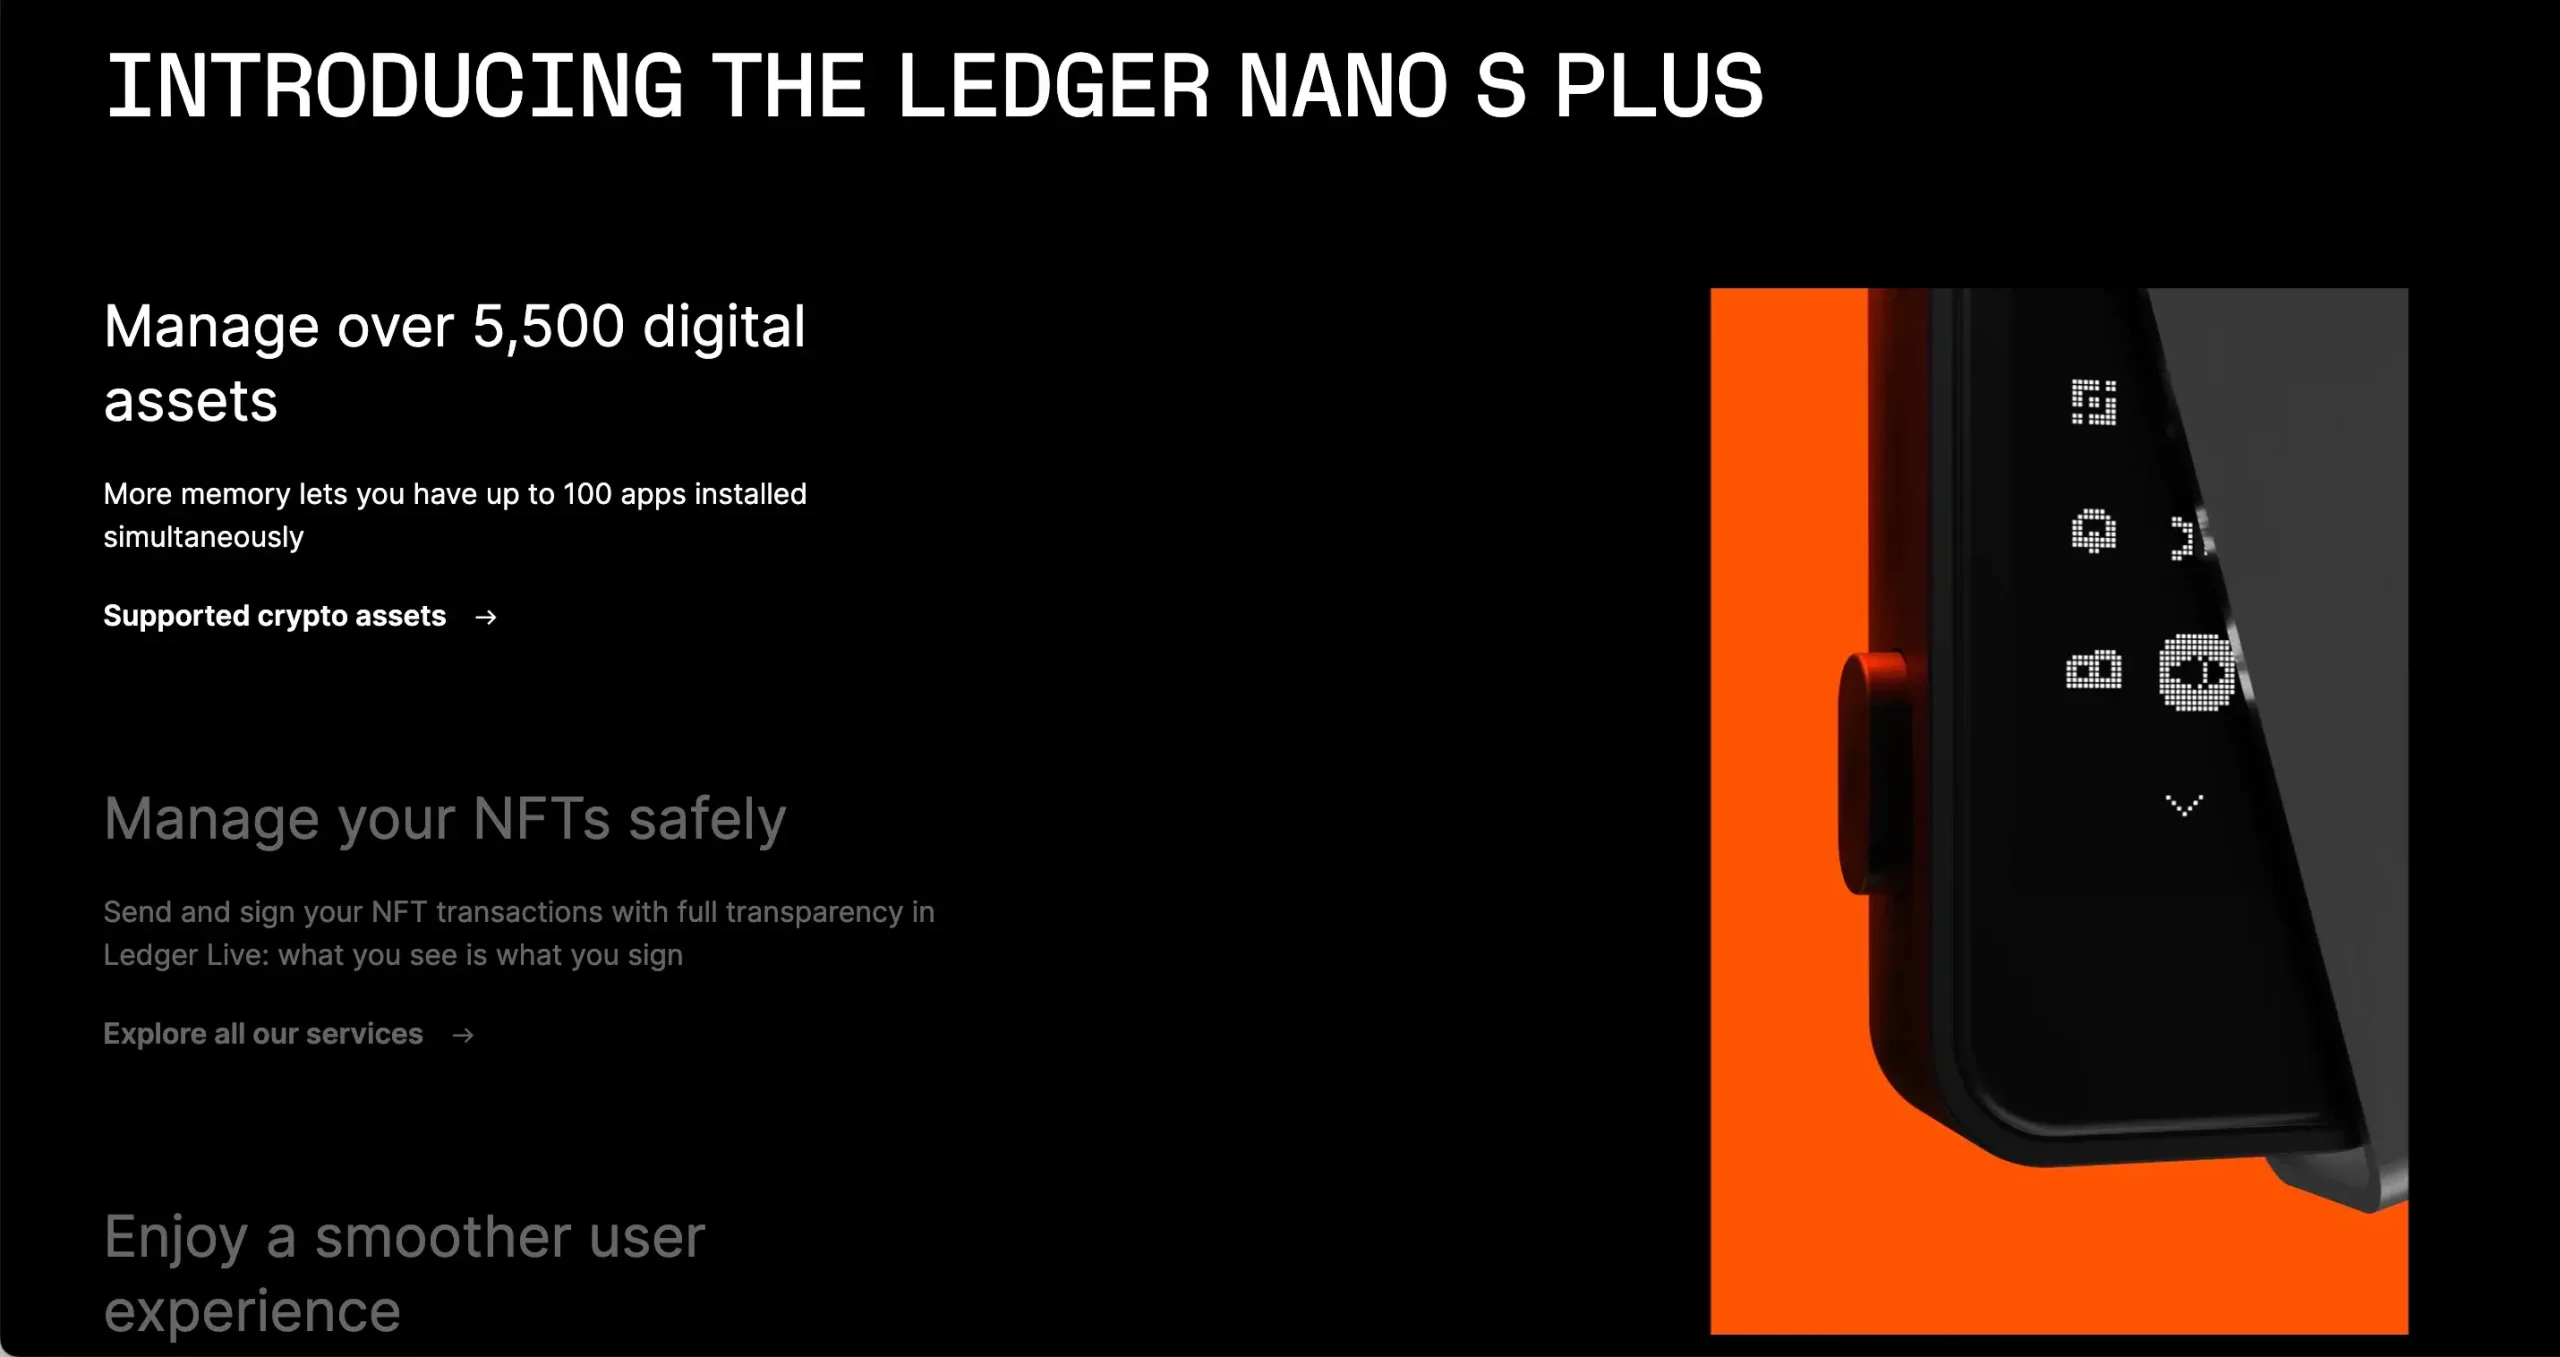 5. Best Ethereum Cold Wallet: Ledger Nano S